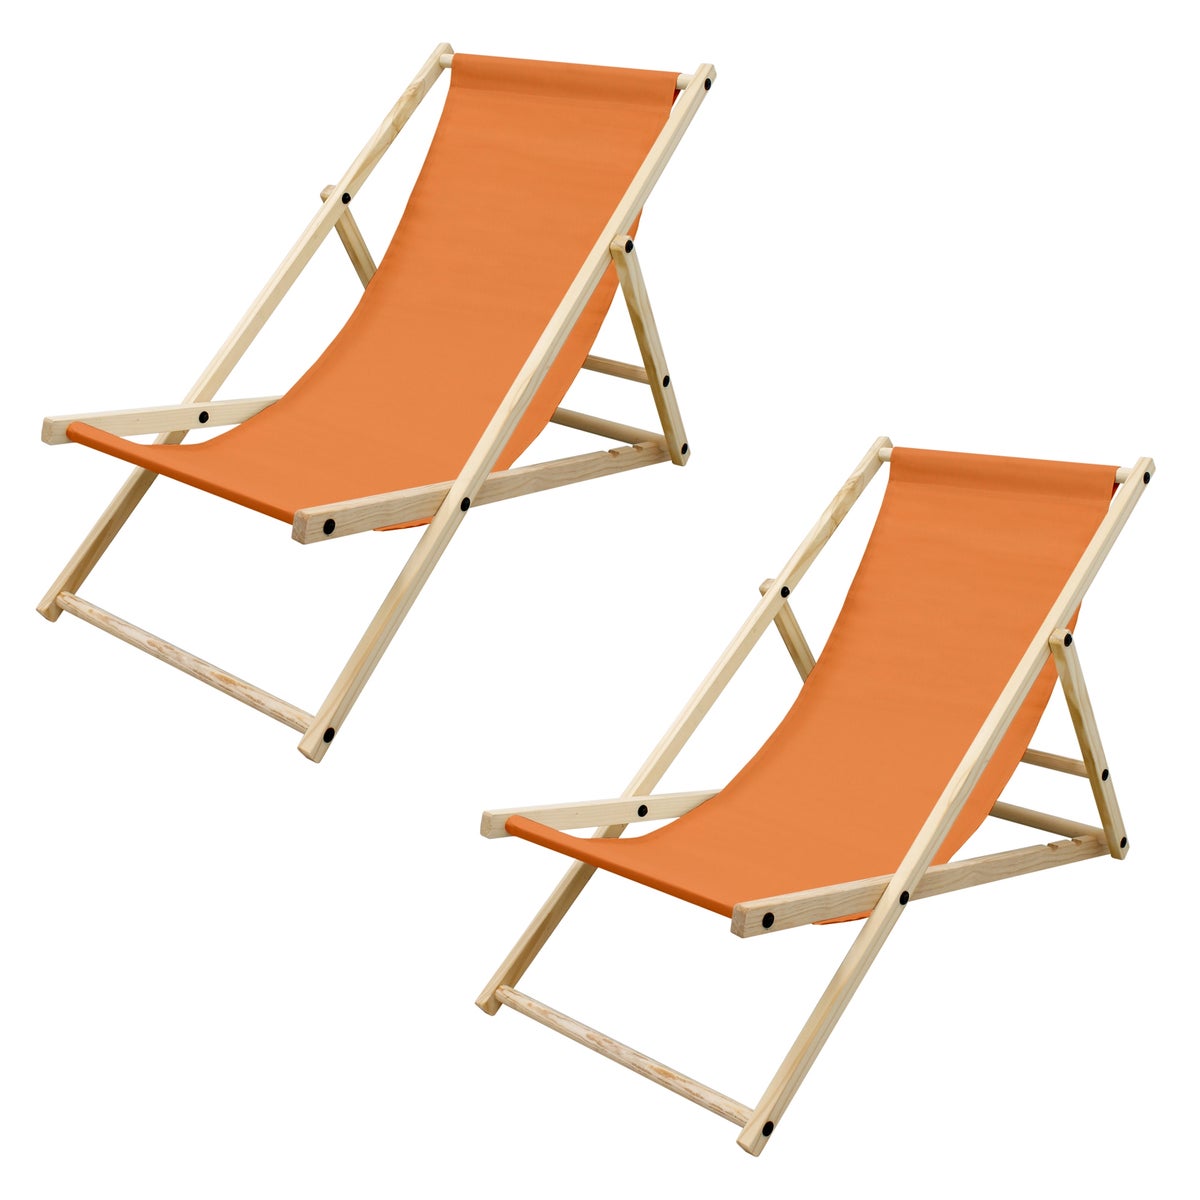 ECD Germany 2er Set Liegestuhl klappbar aus Holz, 3 Liegepositionen, Orange, bis 120kg, Gartenliege Sonnenliege Relaxliege Strandliege Liege Strandstuhl Klappstuhl, für den Garten Terrasse und Balkon